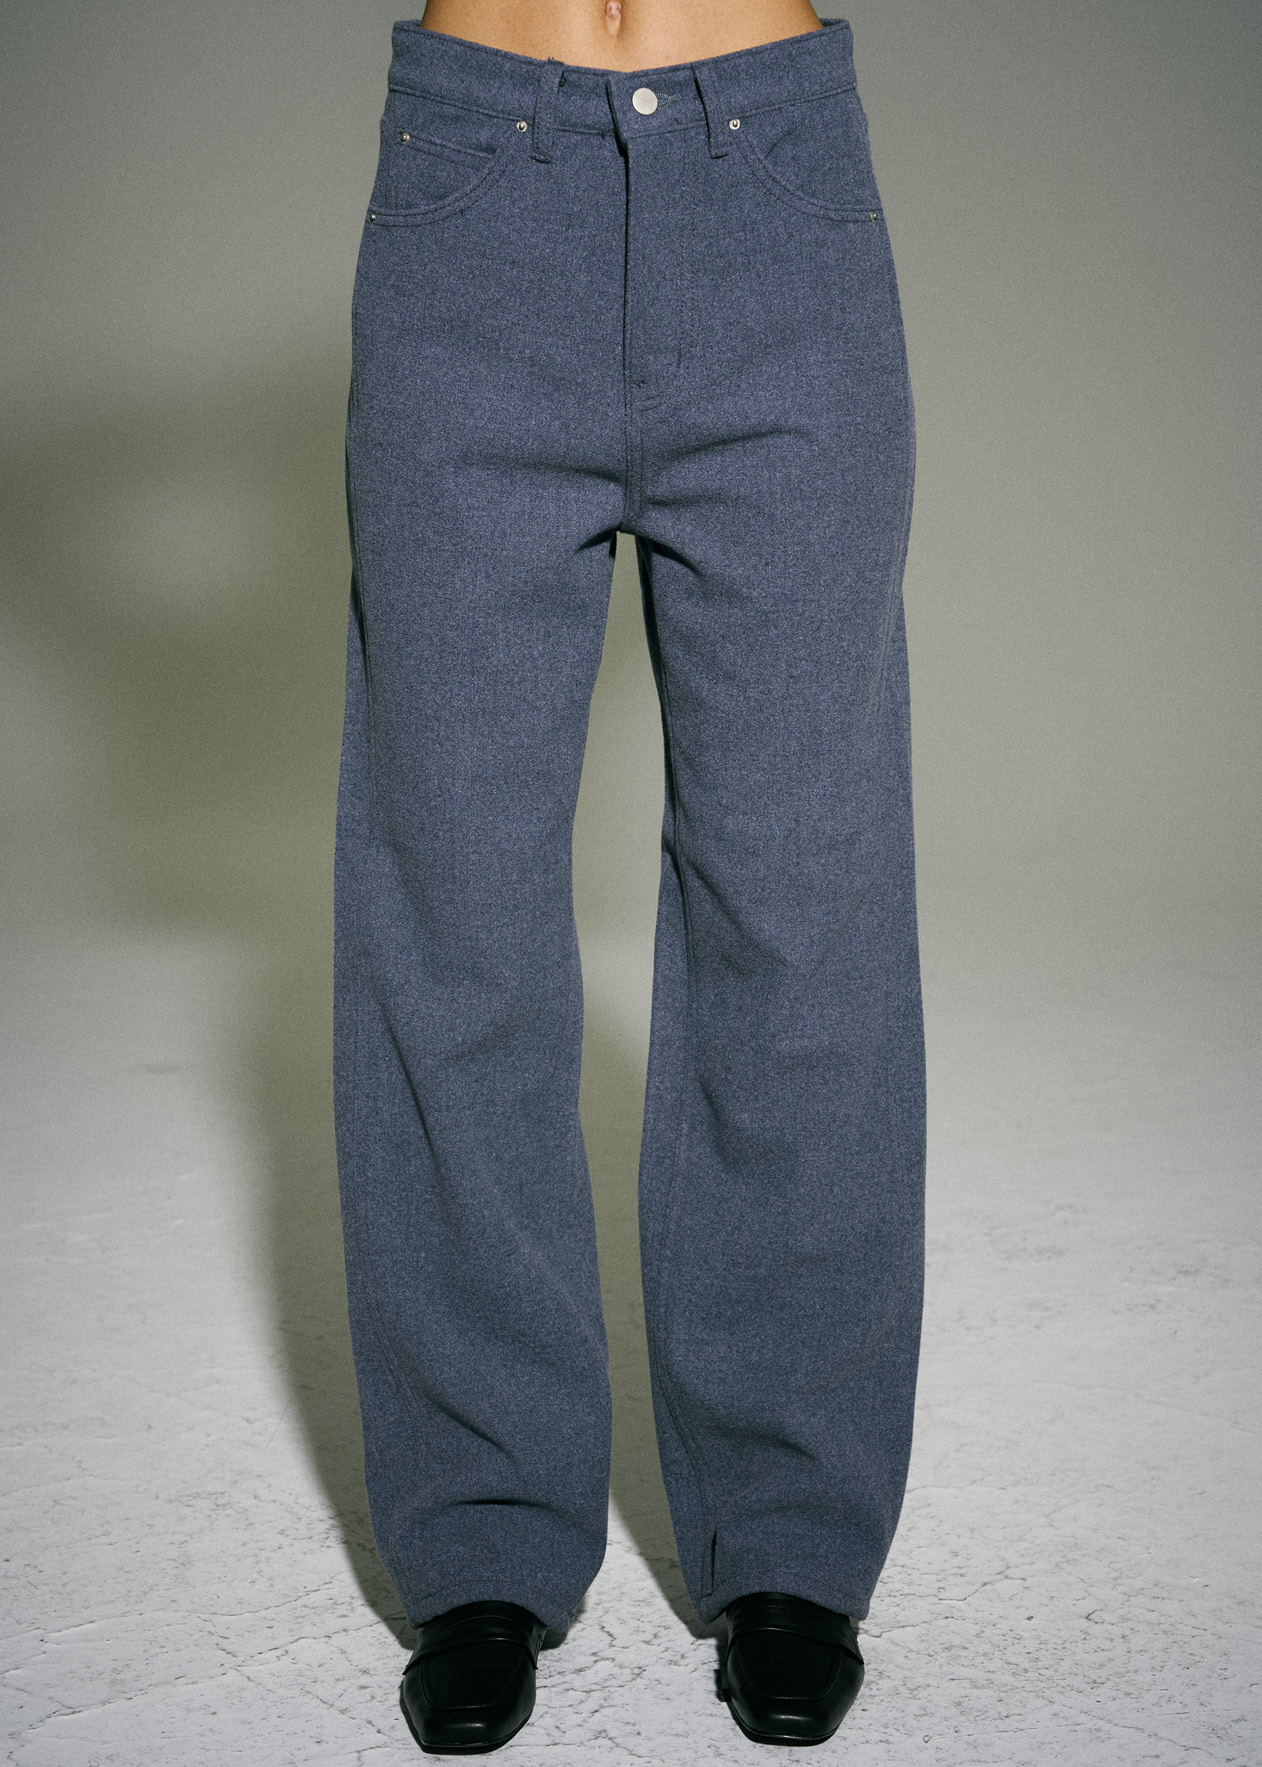 SALE_Wool pair pants